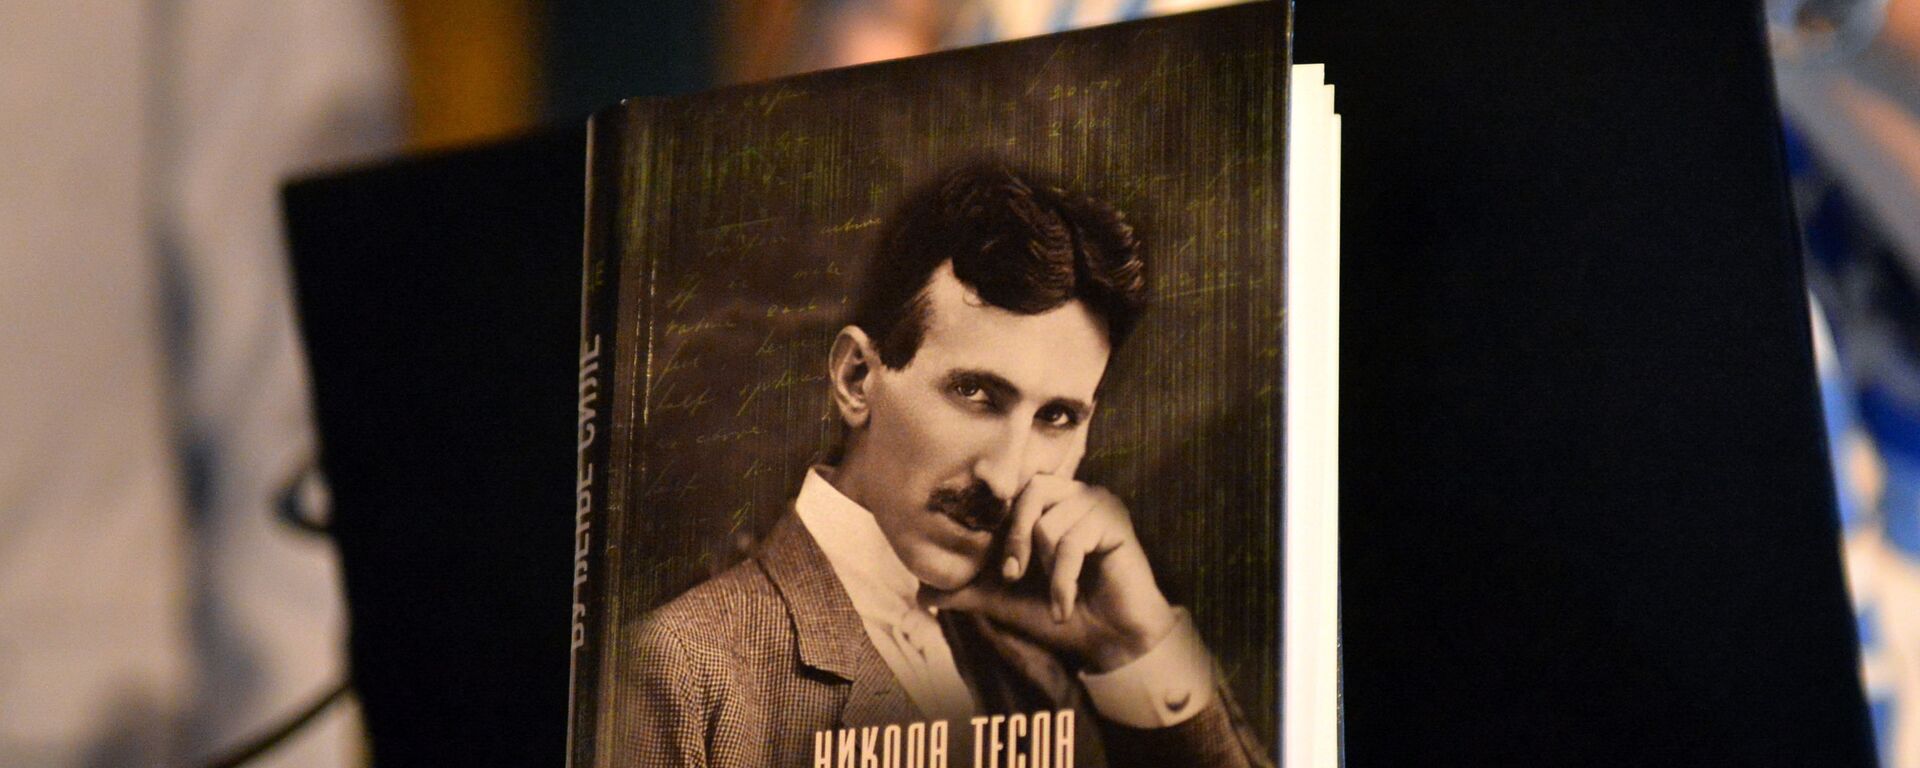 Промоција књиге „Никола Тесла. Буђење силе. Излаз из Матрице“  - Sputnik Србија, 1920, 14.07.2021